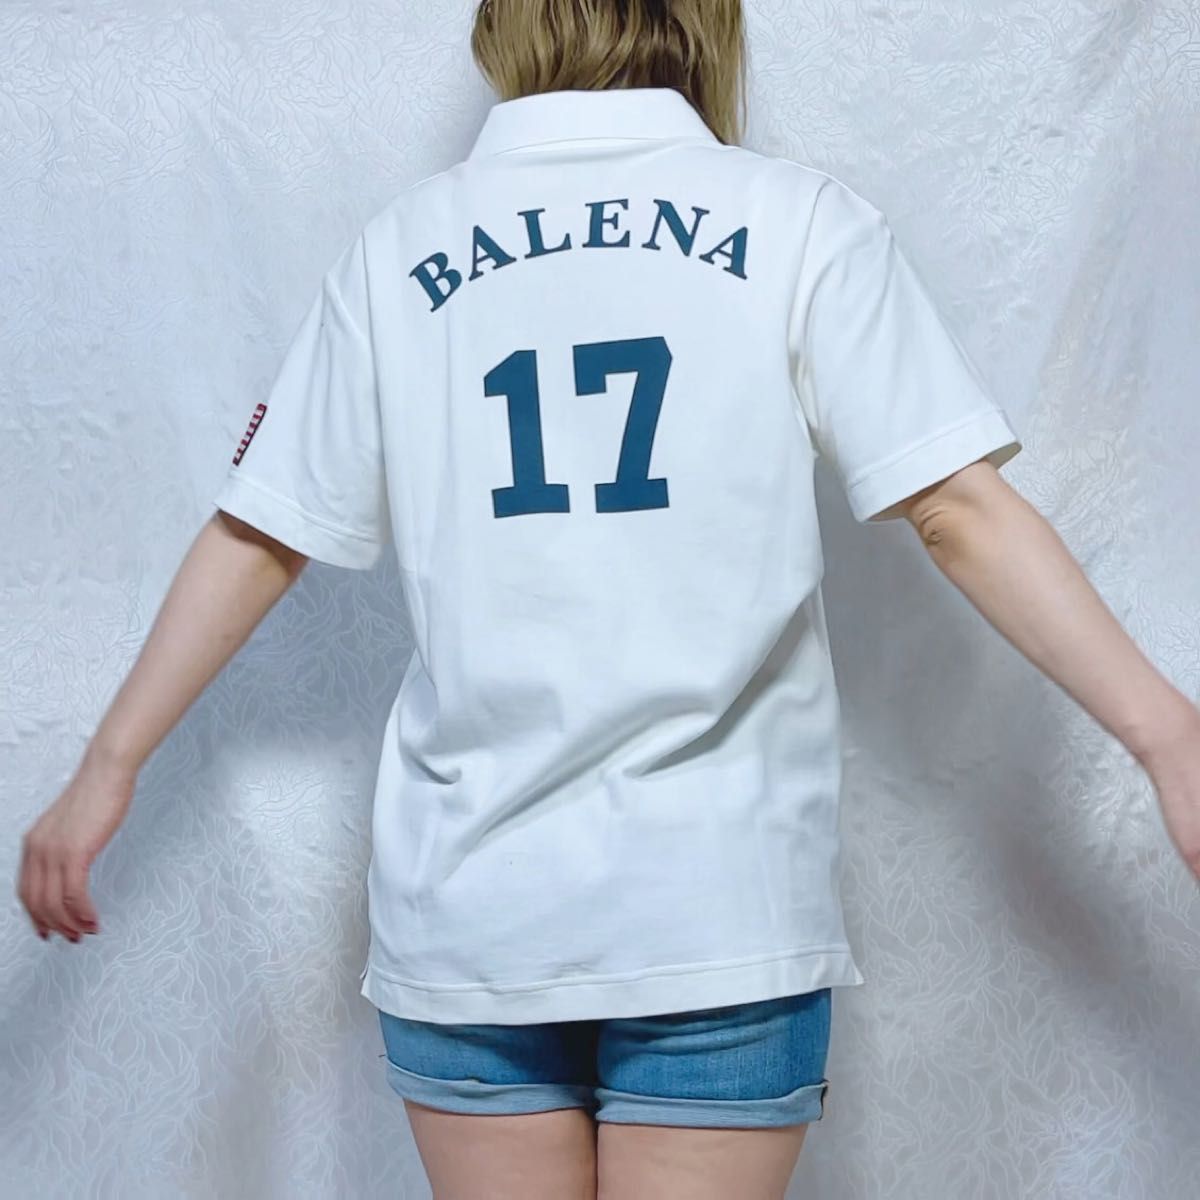 【新品未使用】BALENA 新作 人気完売品 M〜L ポロシャツホワイト パーリーゲイツ アディダスゴルフ バレーナ